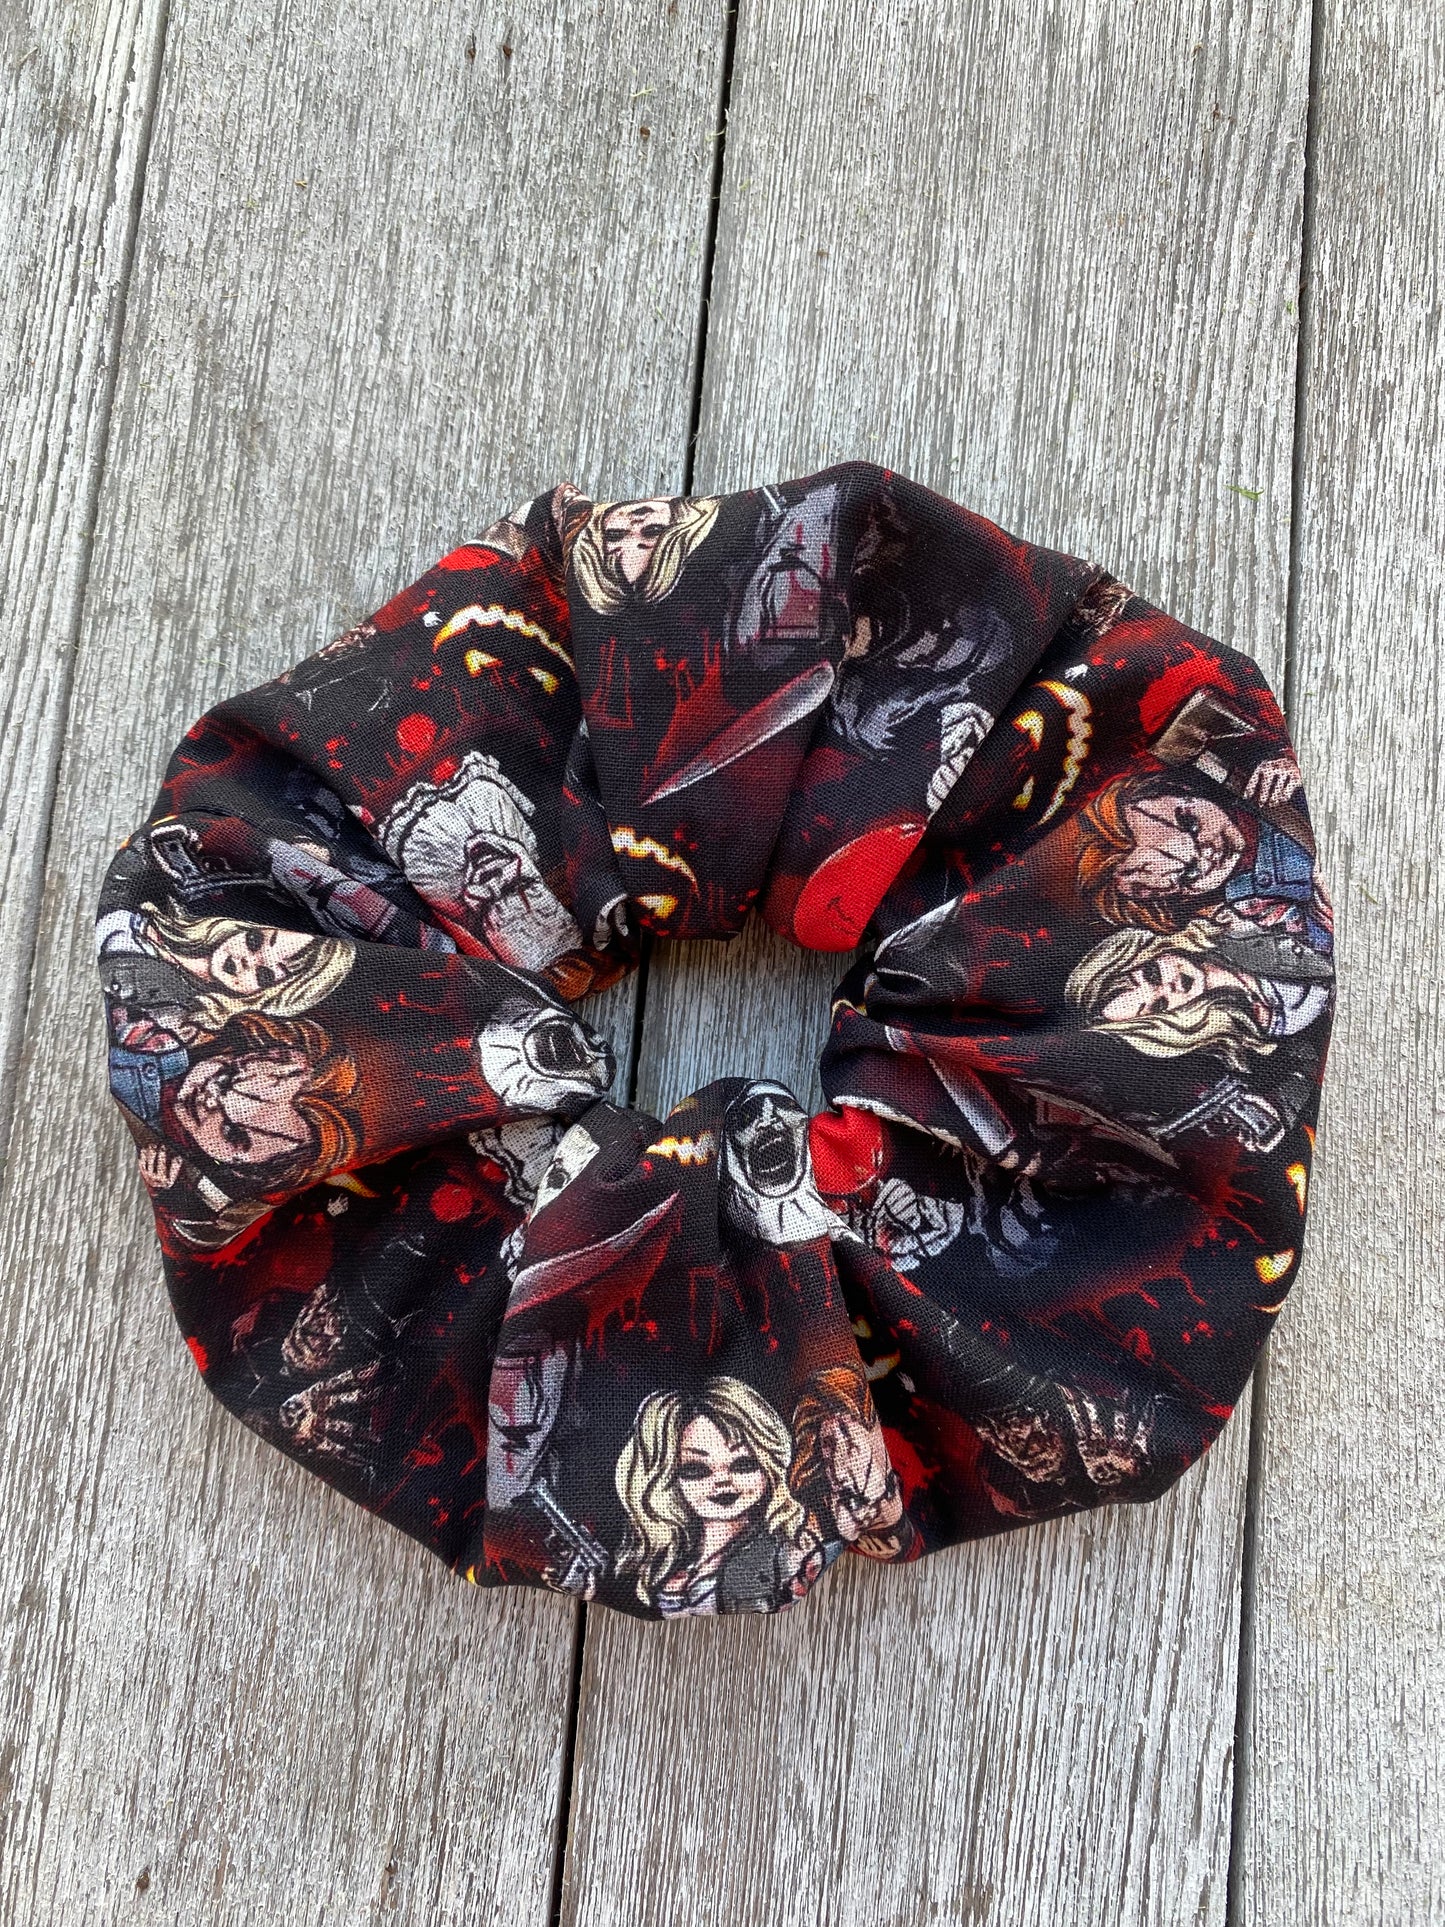 Horror Movie Scrunchie Hair Tie Gift